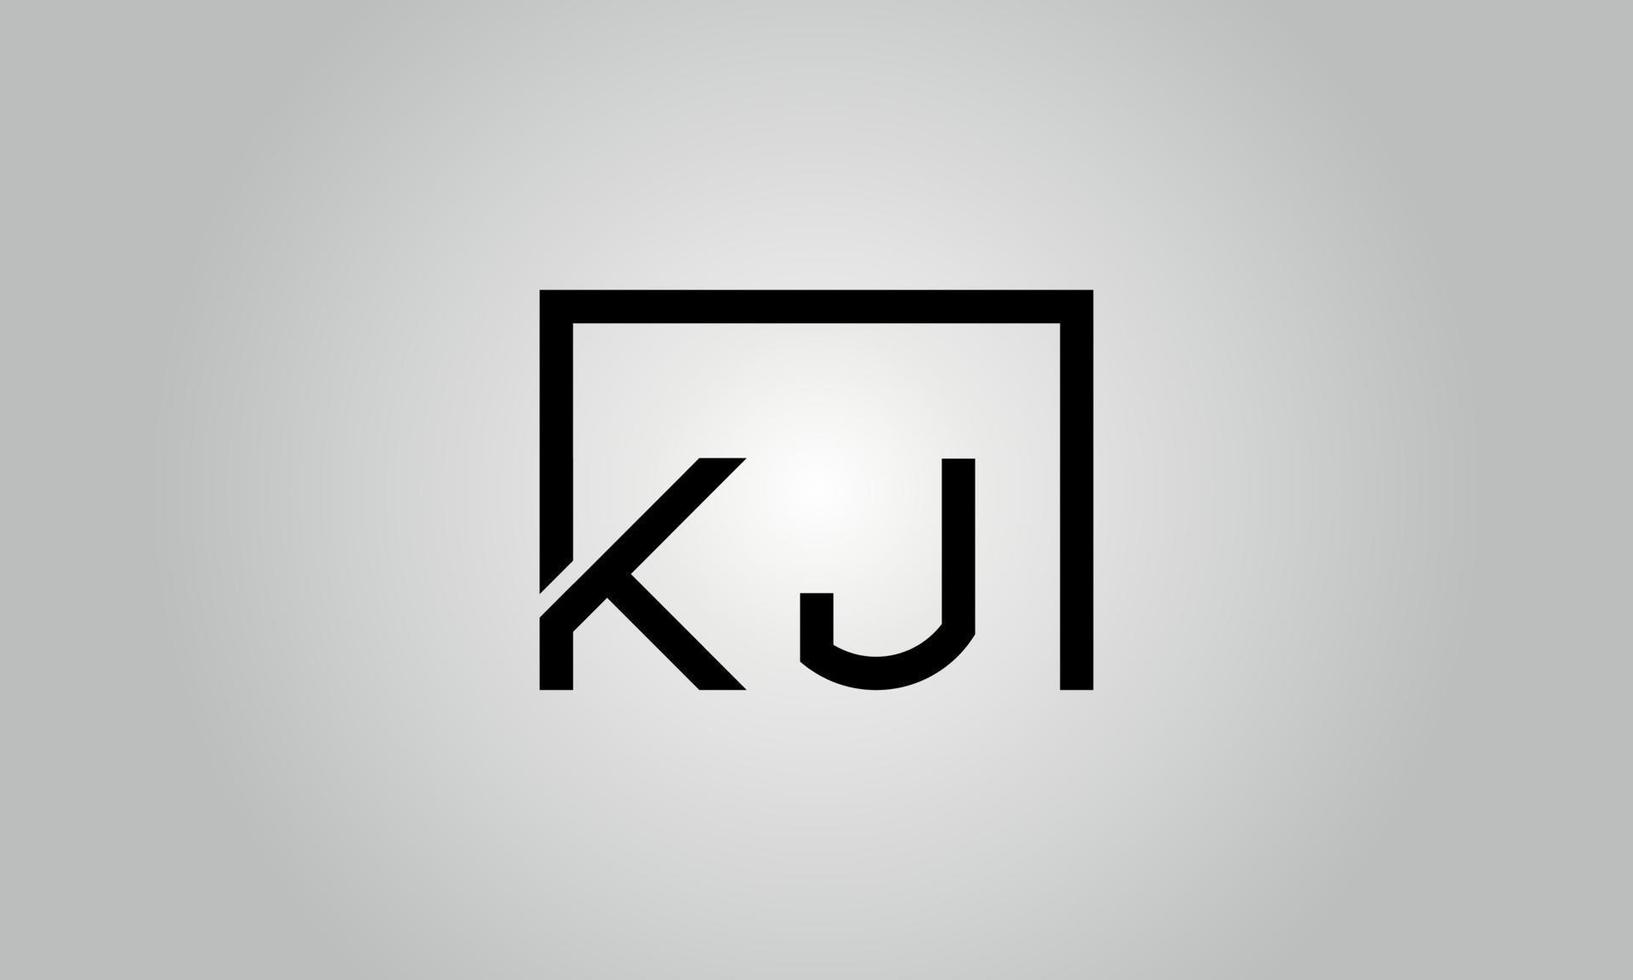 création de logo lettre kj. logo kj avec forme carrée dans le modèle vectoriel gratuit de couleurs noires.